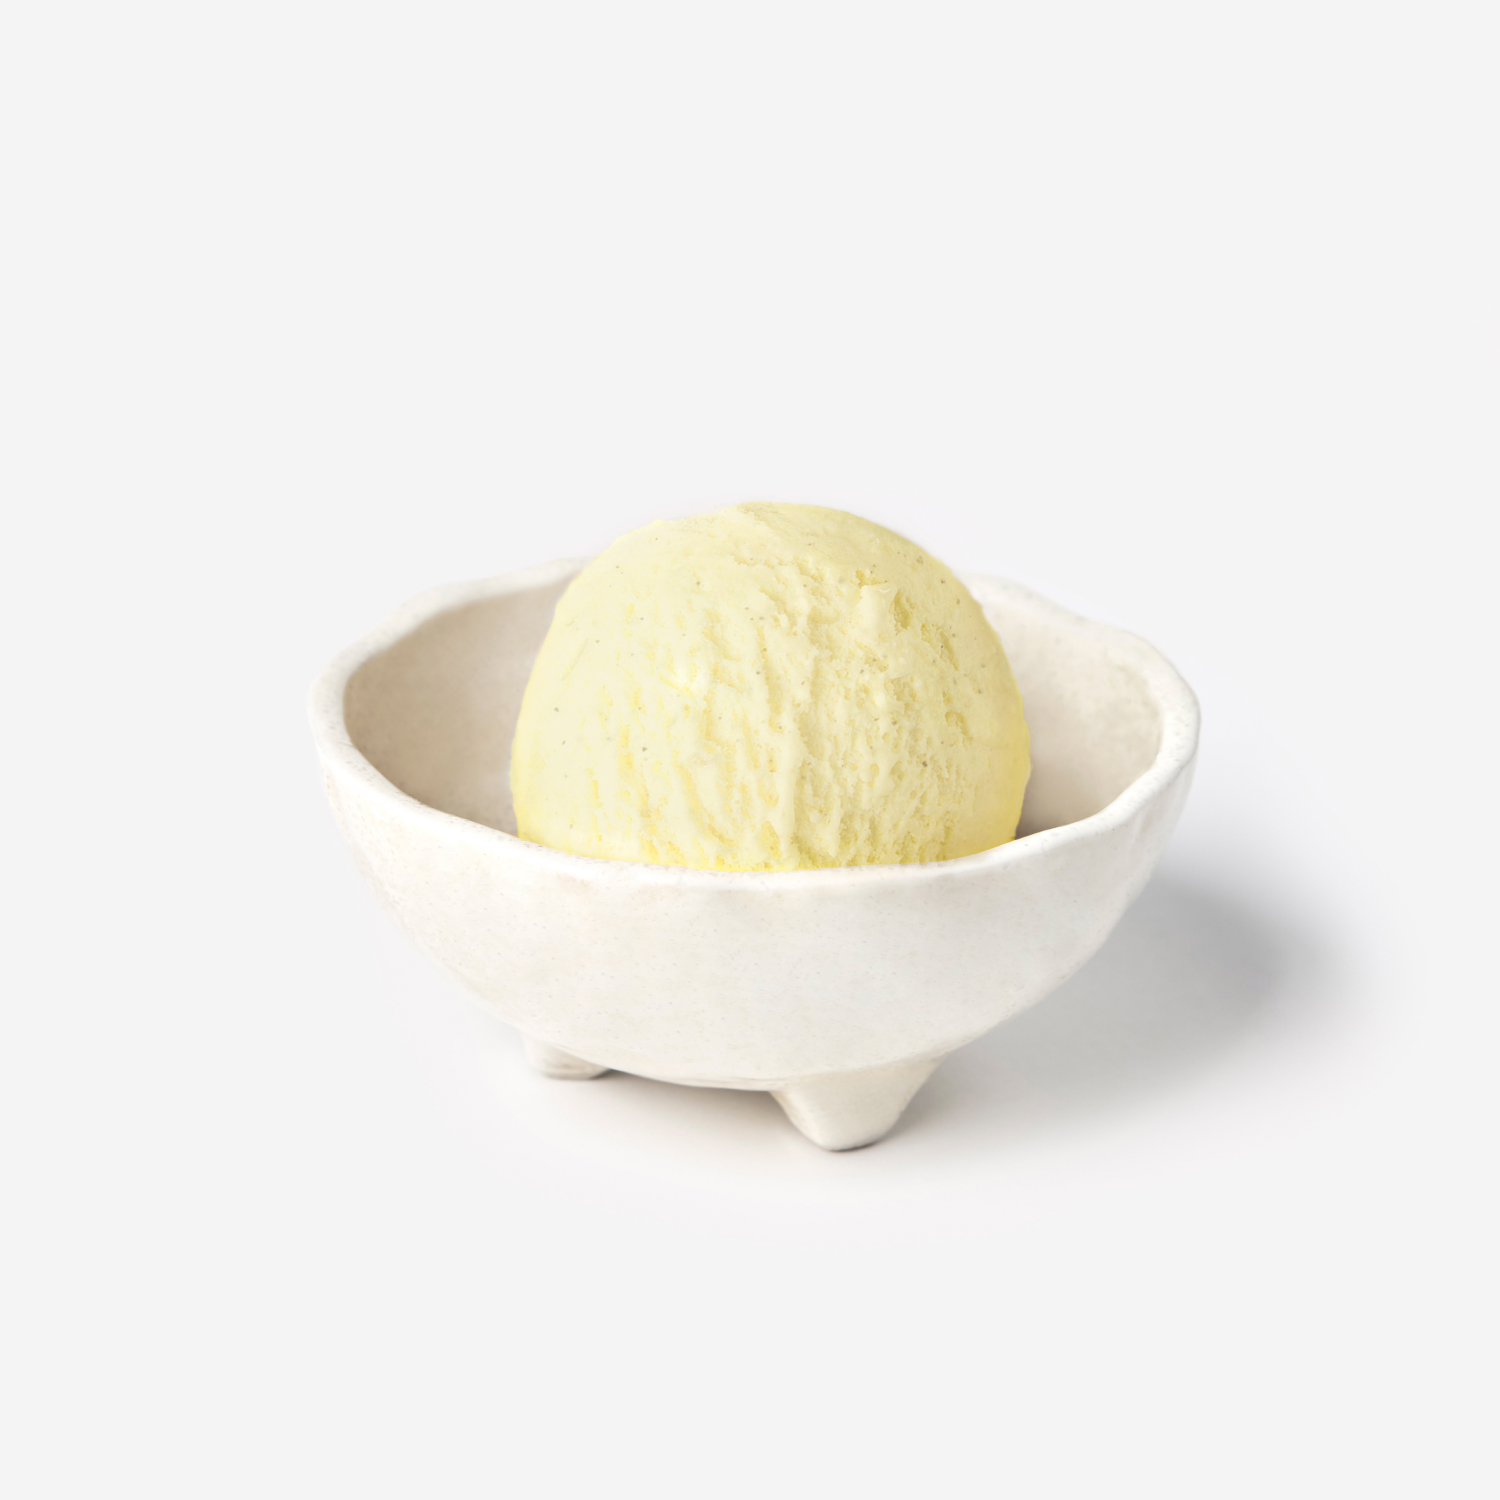 ไอศกรีม : SYNOVA มะม่วงเสาวรสซอร์เบทไอศกรีม 4 L. (แพน)